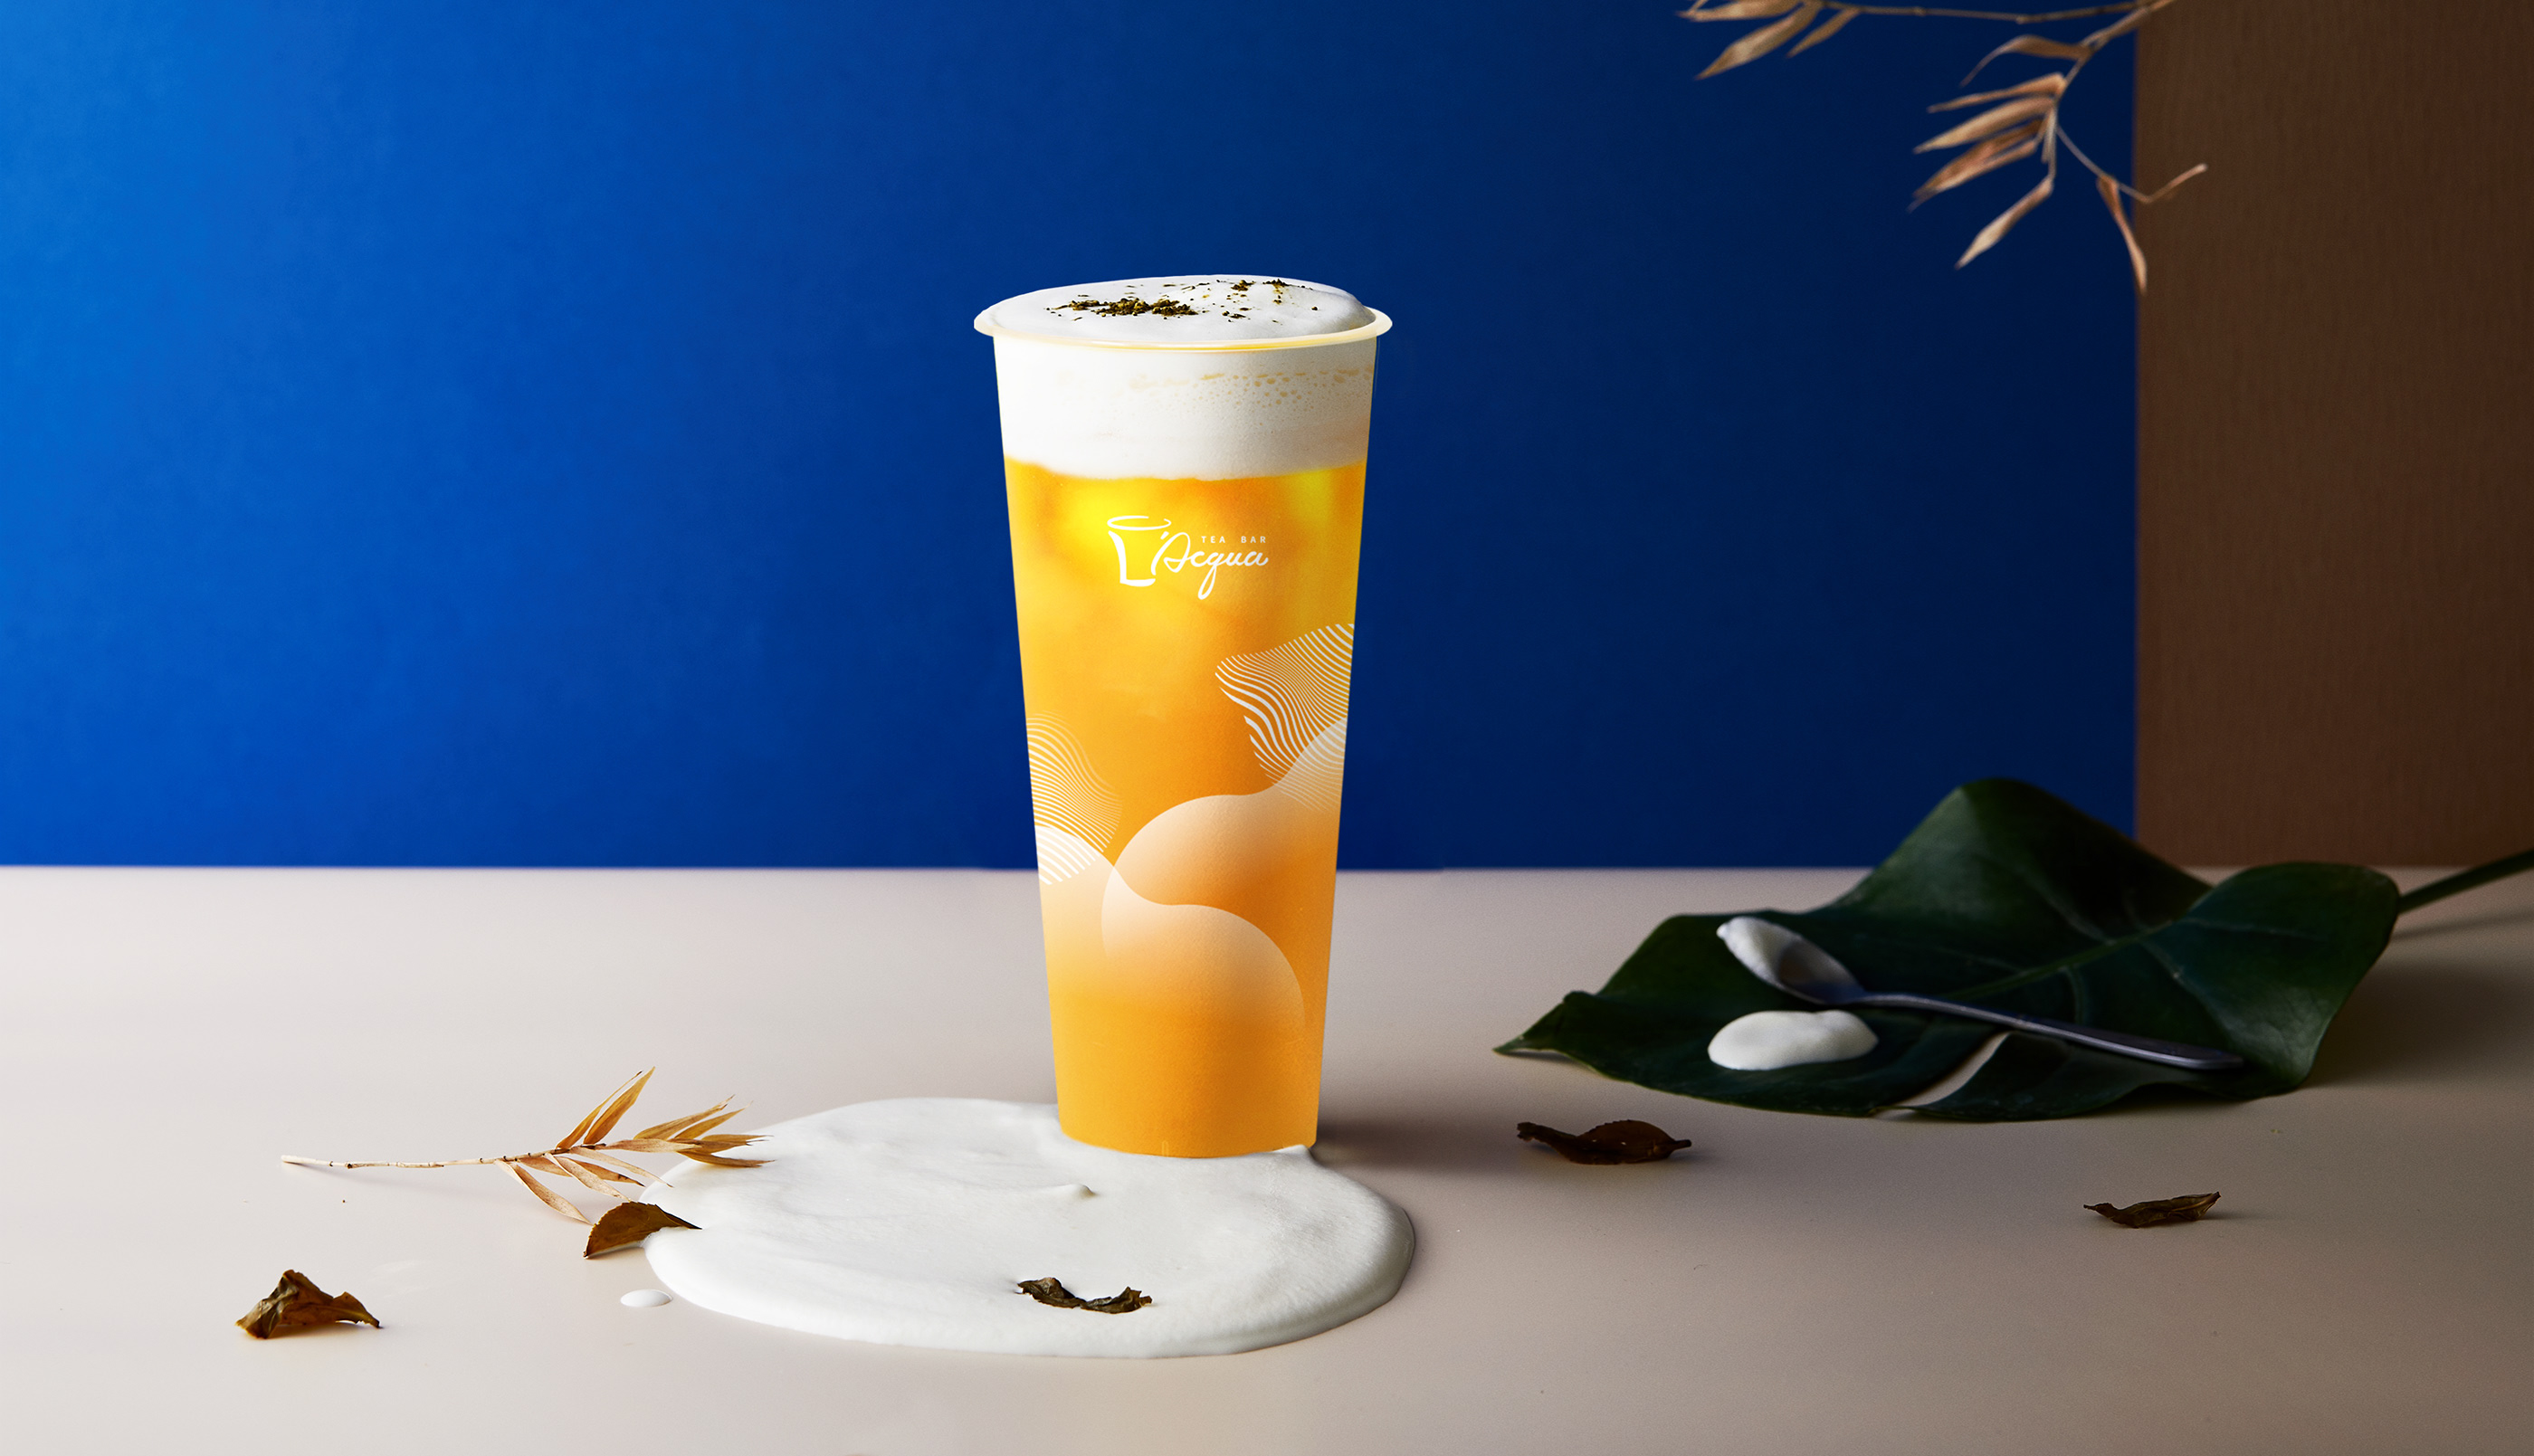 L'acqua茶饮品牌形象设计